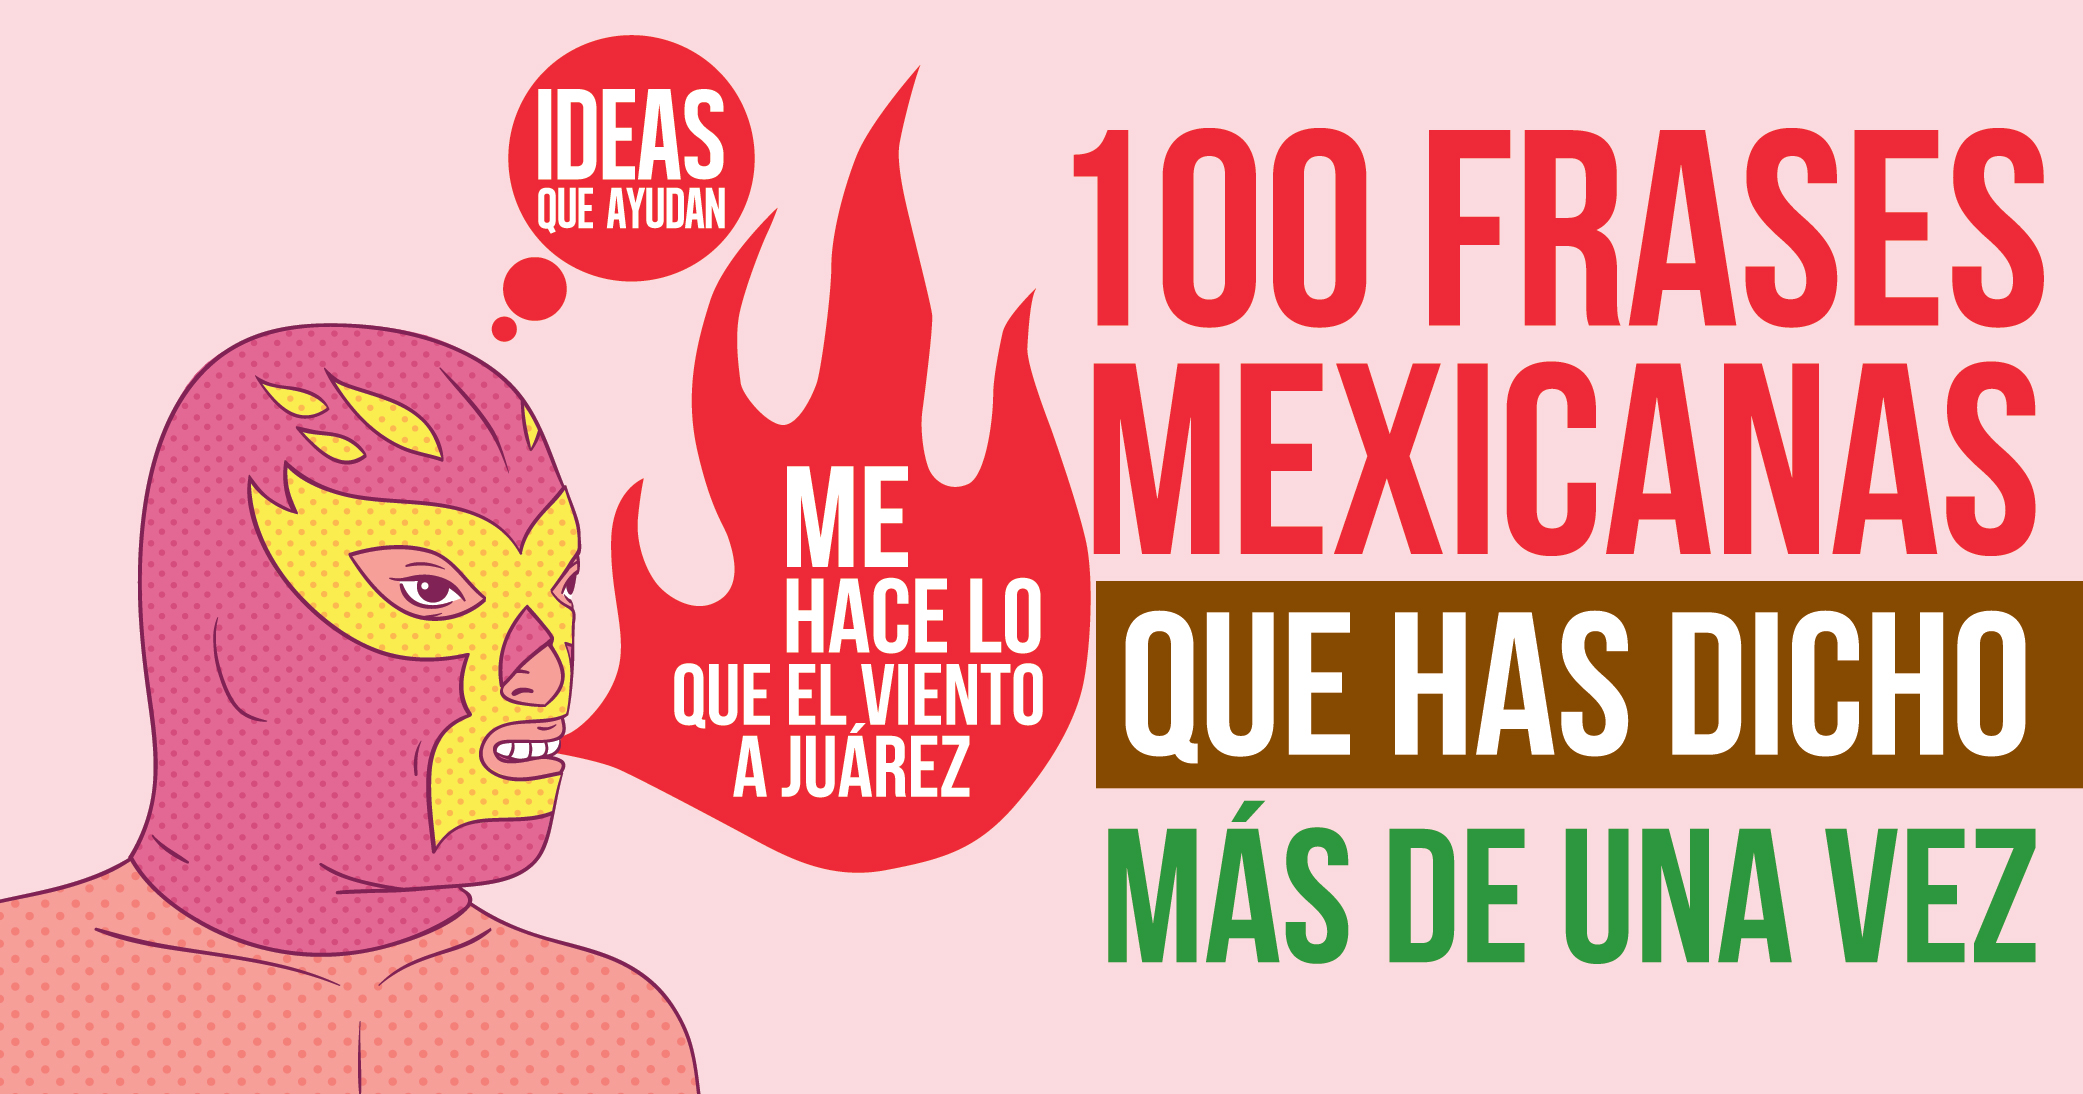 Cien frases mexicanas que has dicho más de una vez